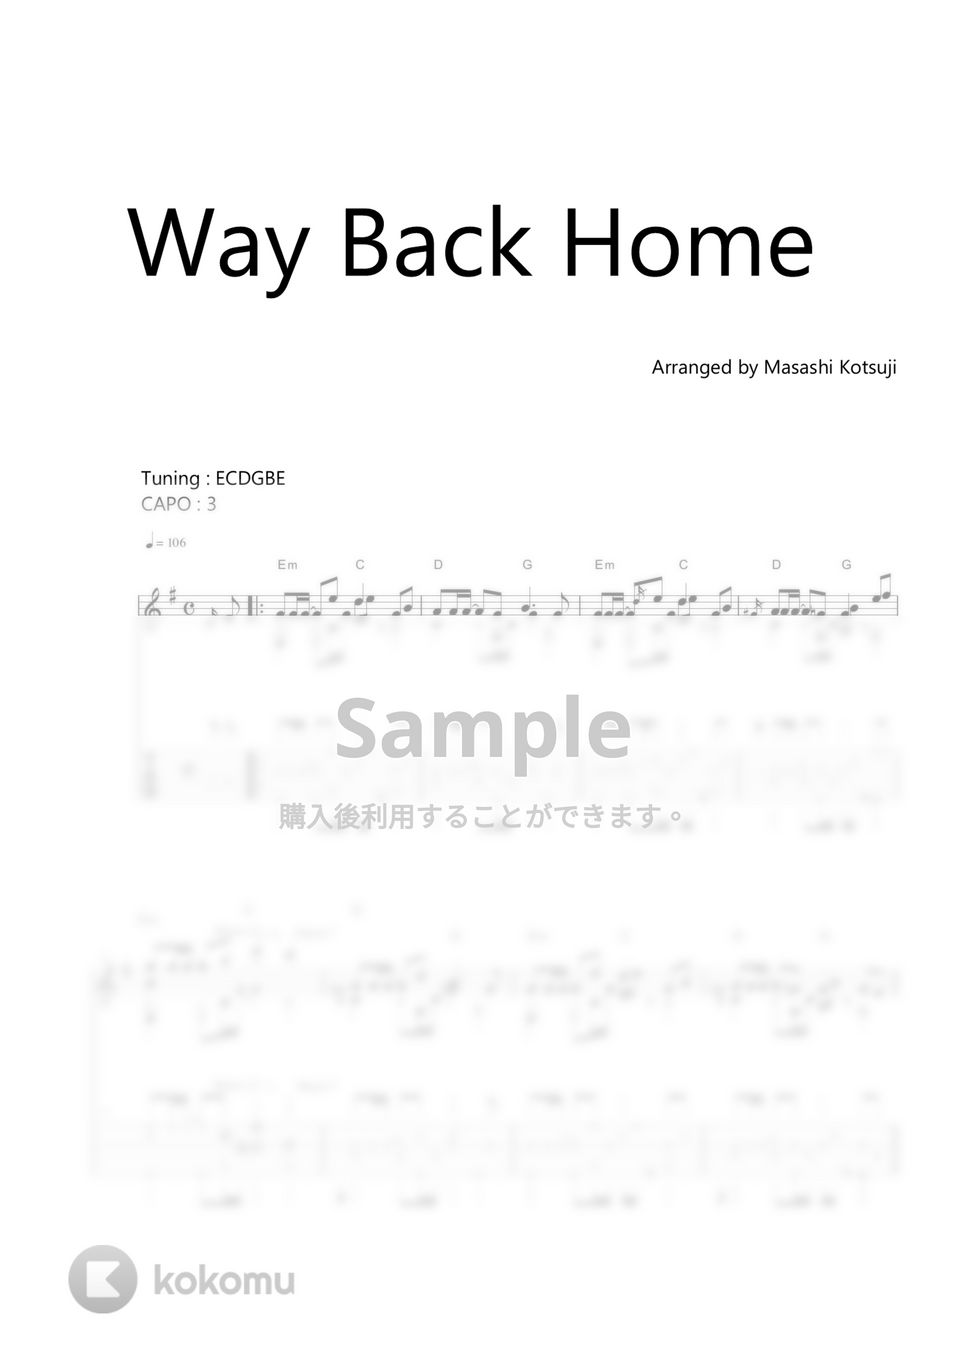 SHAUN - Way Back Home (feat. Conor Maynard) by Masashi Kotsuji